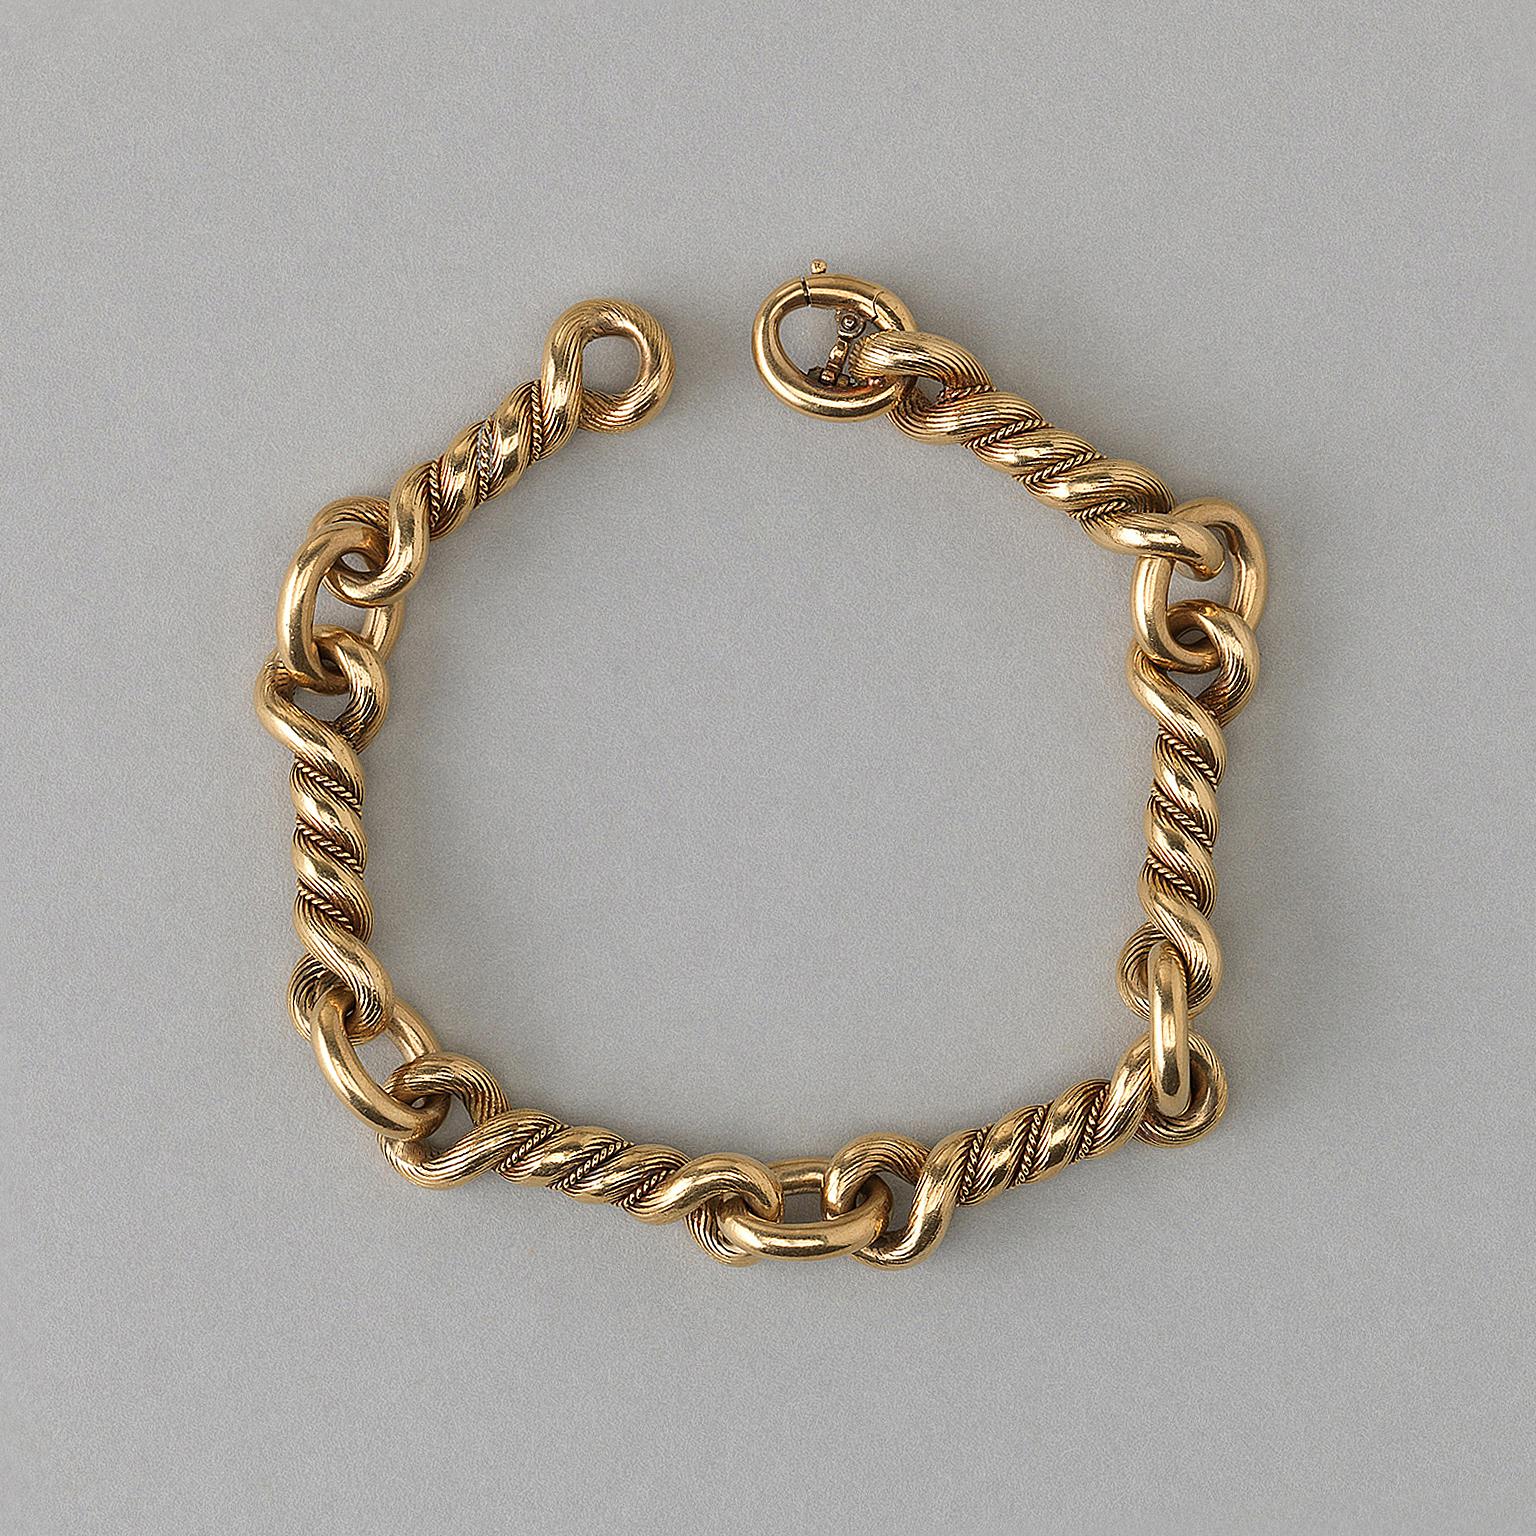 An 18 carat gold knot bracelet, signed: Hermès, Paris, circa 1970.

weight: 71.9 grams
length: 21 cm